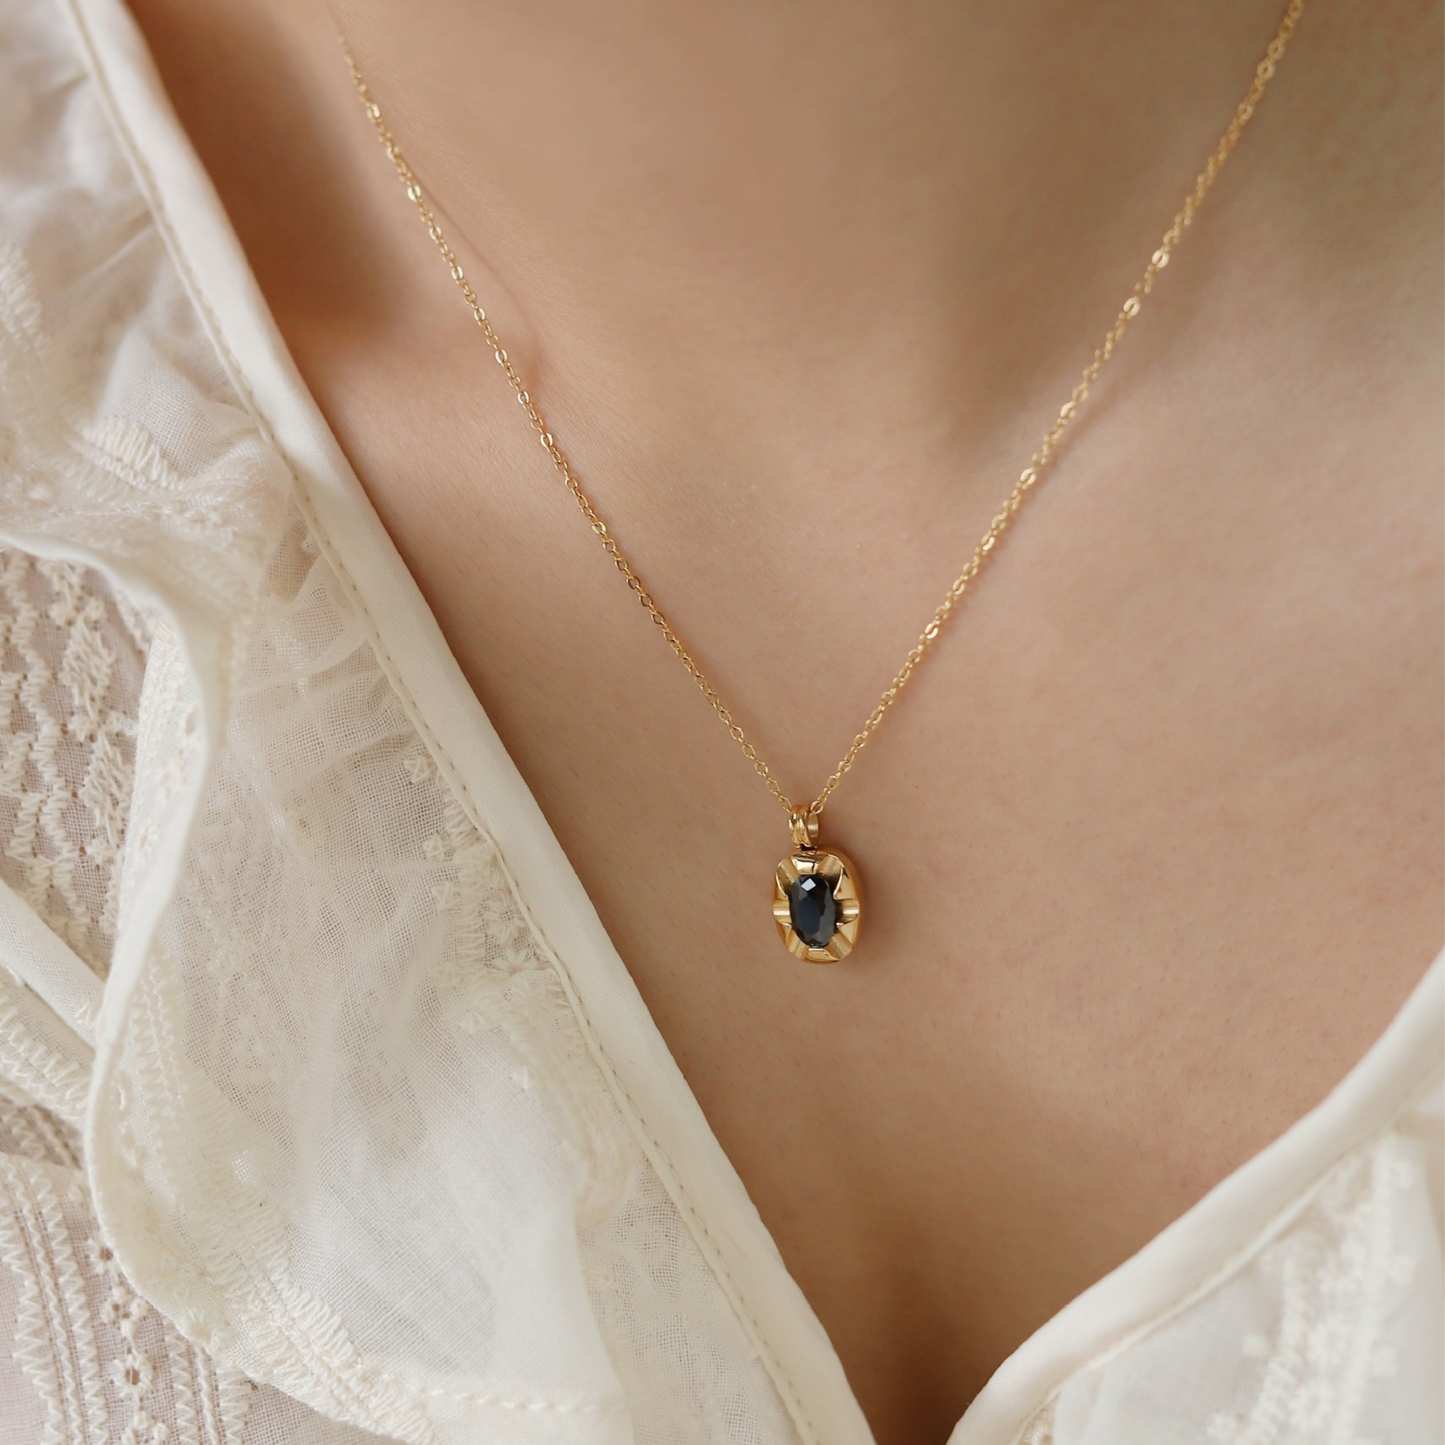 Vintage Black Gemstone Pendant Necklace for Women